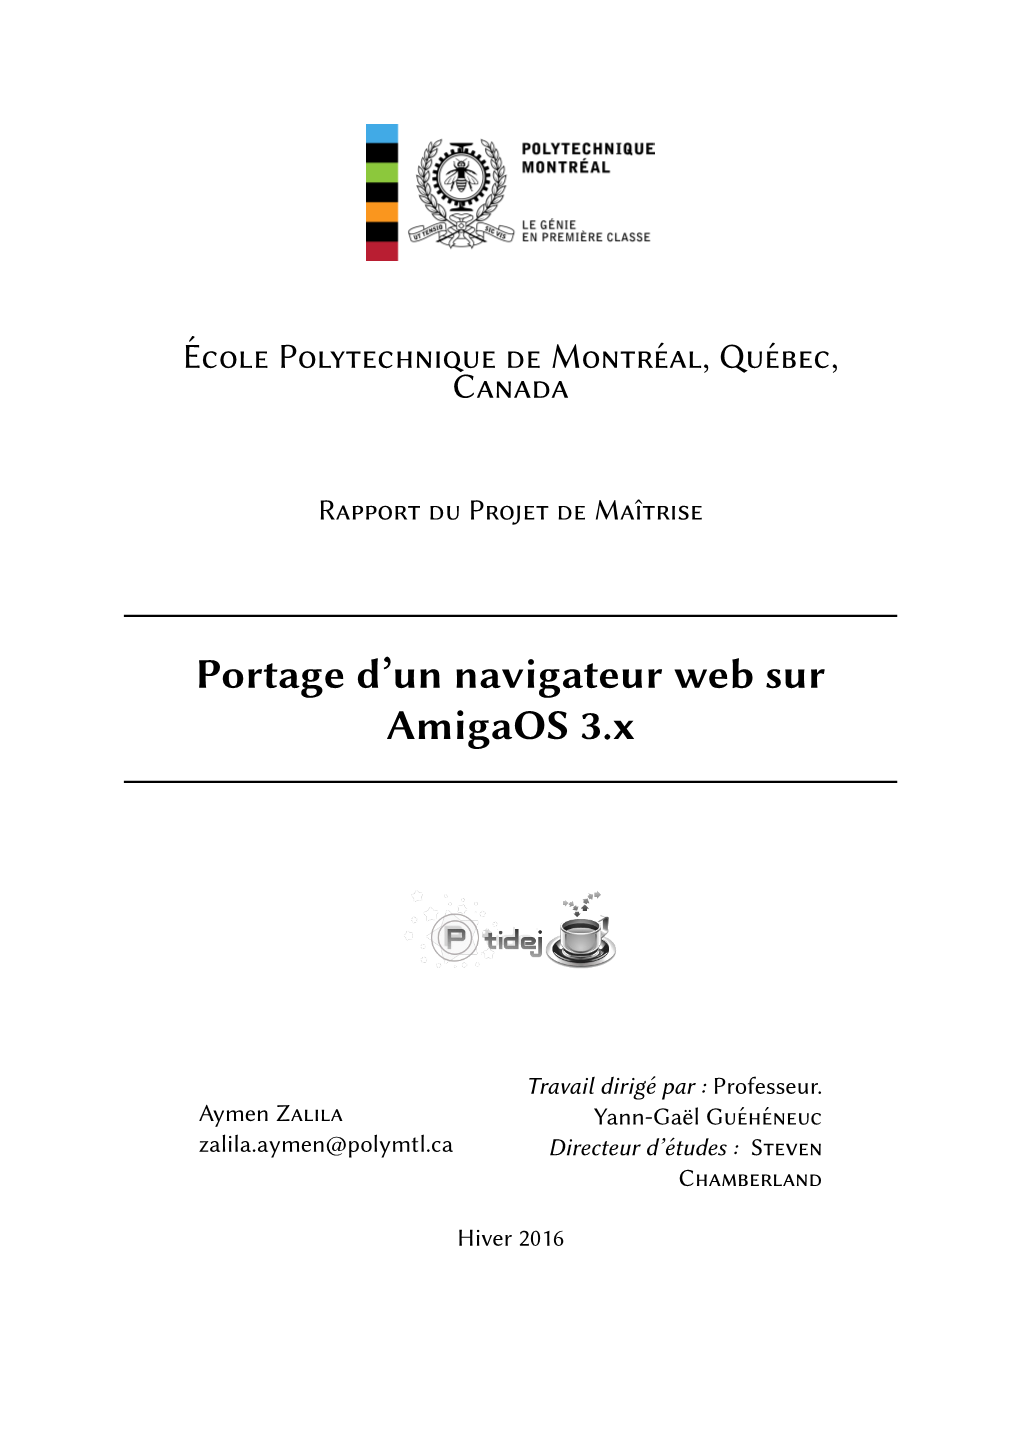 Portage D'un Navigateur Web Sur Amigaos